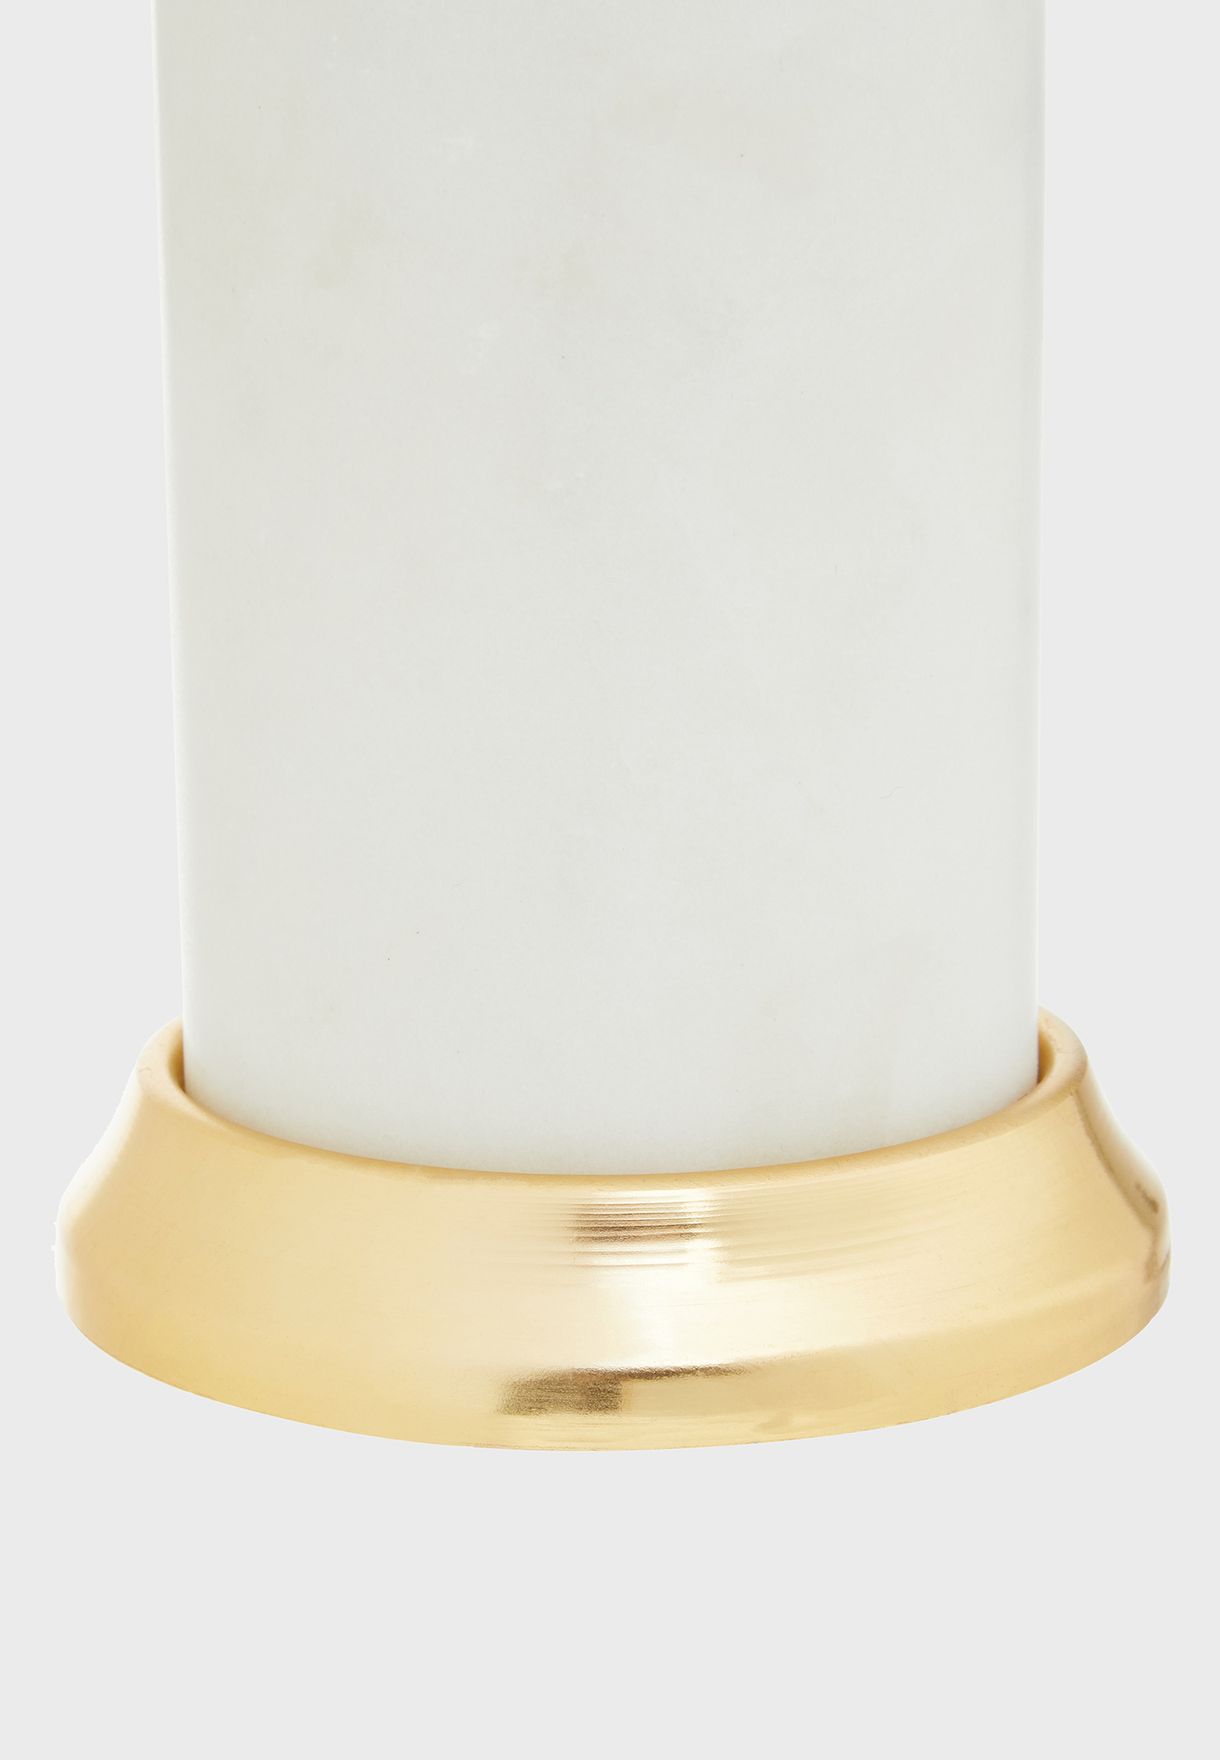 White Marble & Brass Soap Dispenser